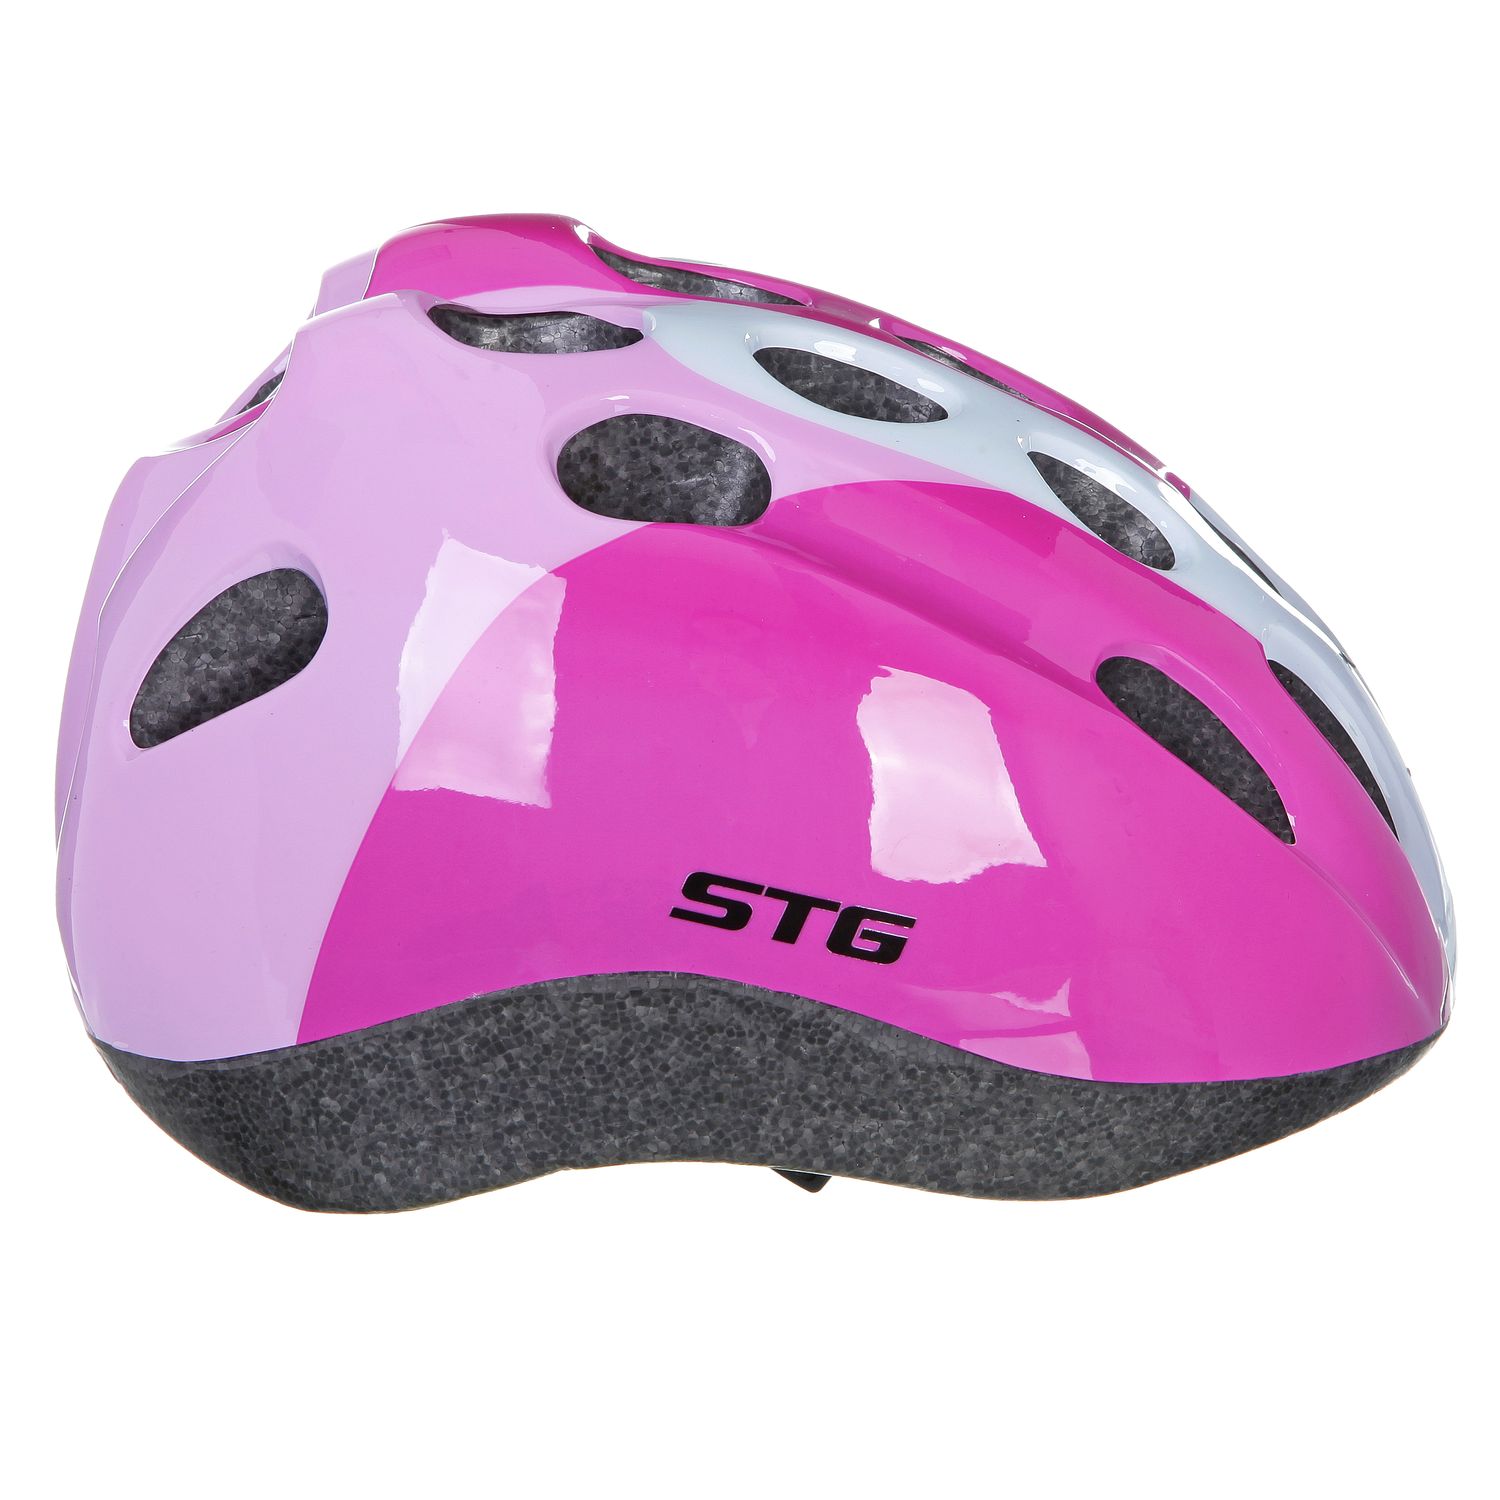 Велосипедный шлем STG HB5-3, розовый/белый, M